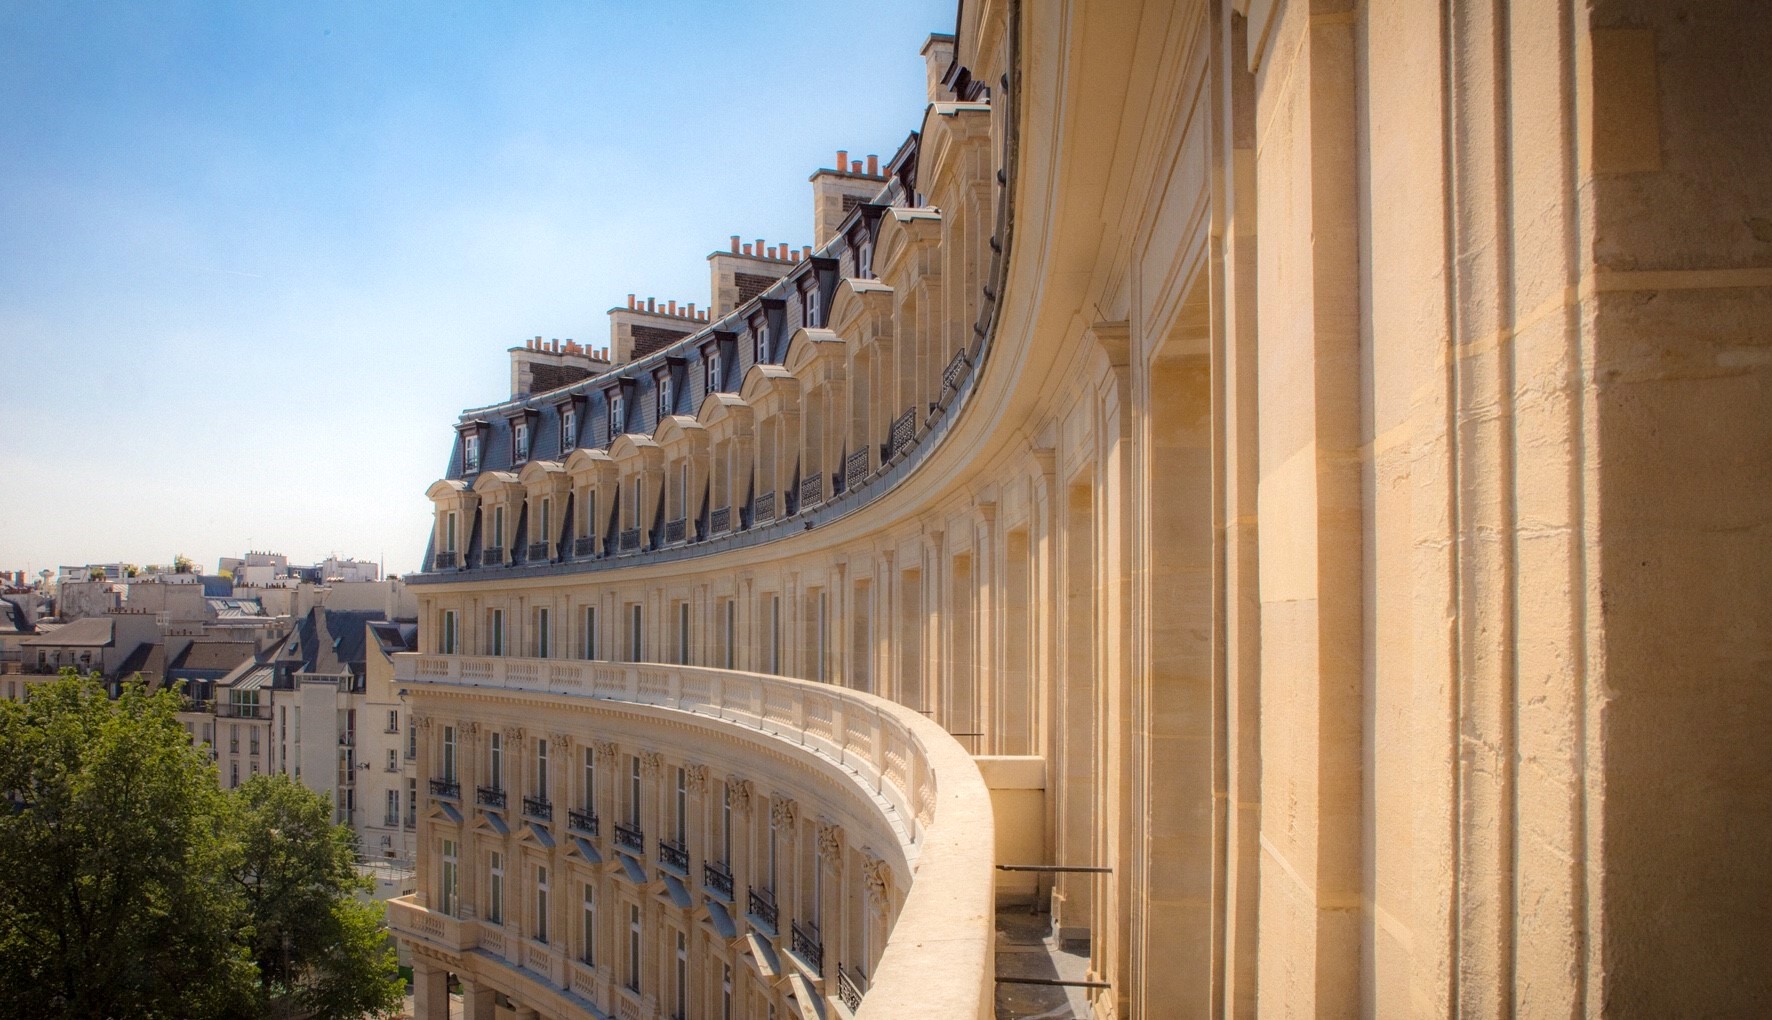 Le 40 Louvre suit les courbes arrondies de la future Collection Pinault.